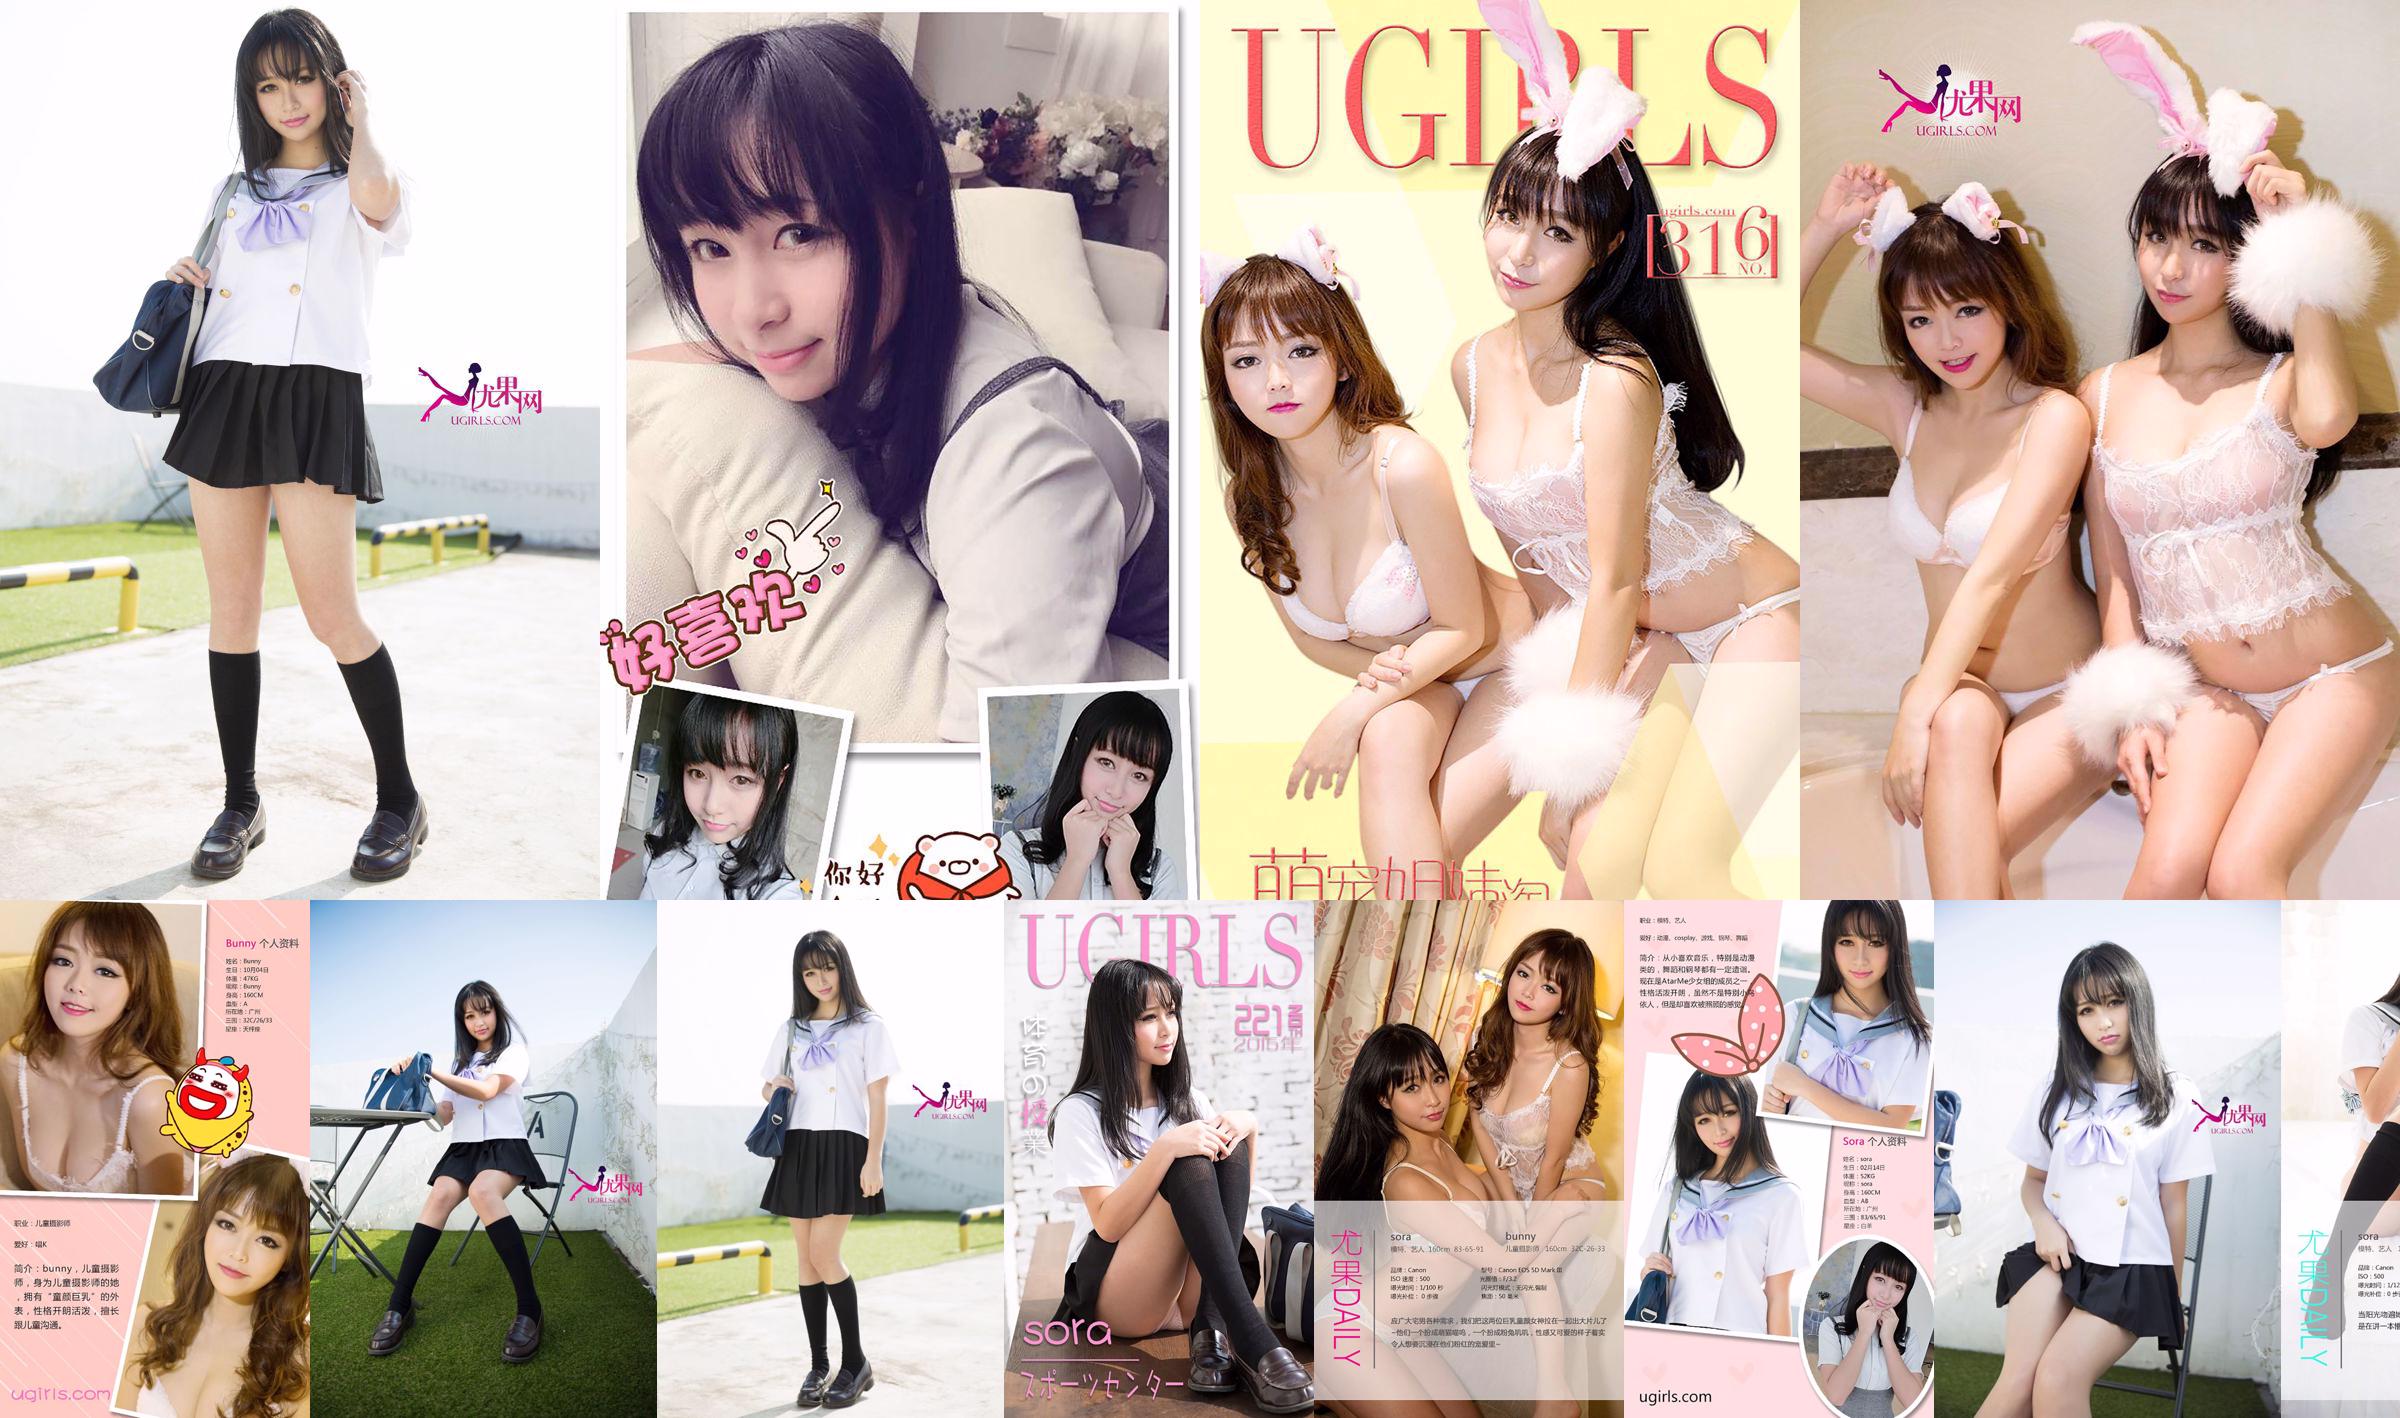 Sora "Tạp chí nữ sinh đồng phục học sinh Nhật Bản" [Ugirls] U142 No.0c83b8 Trang 2